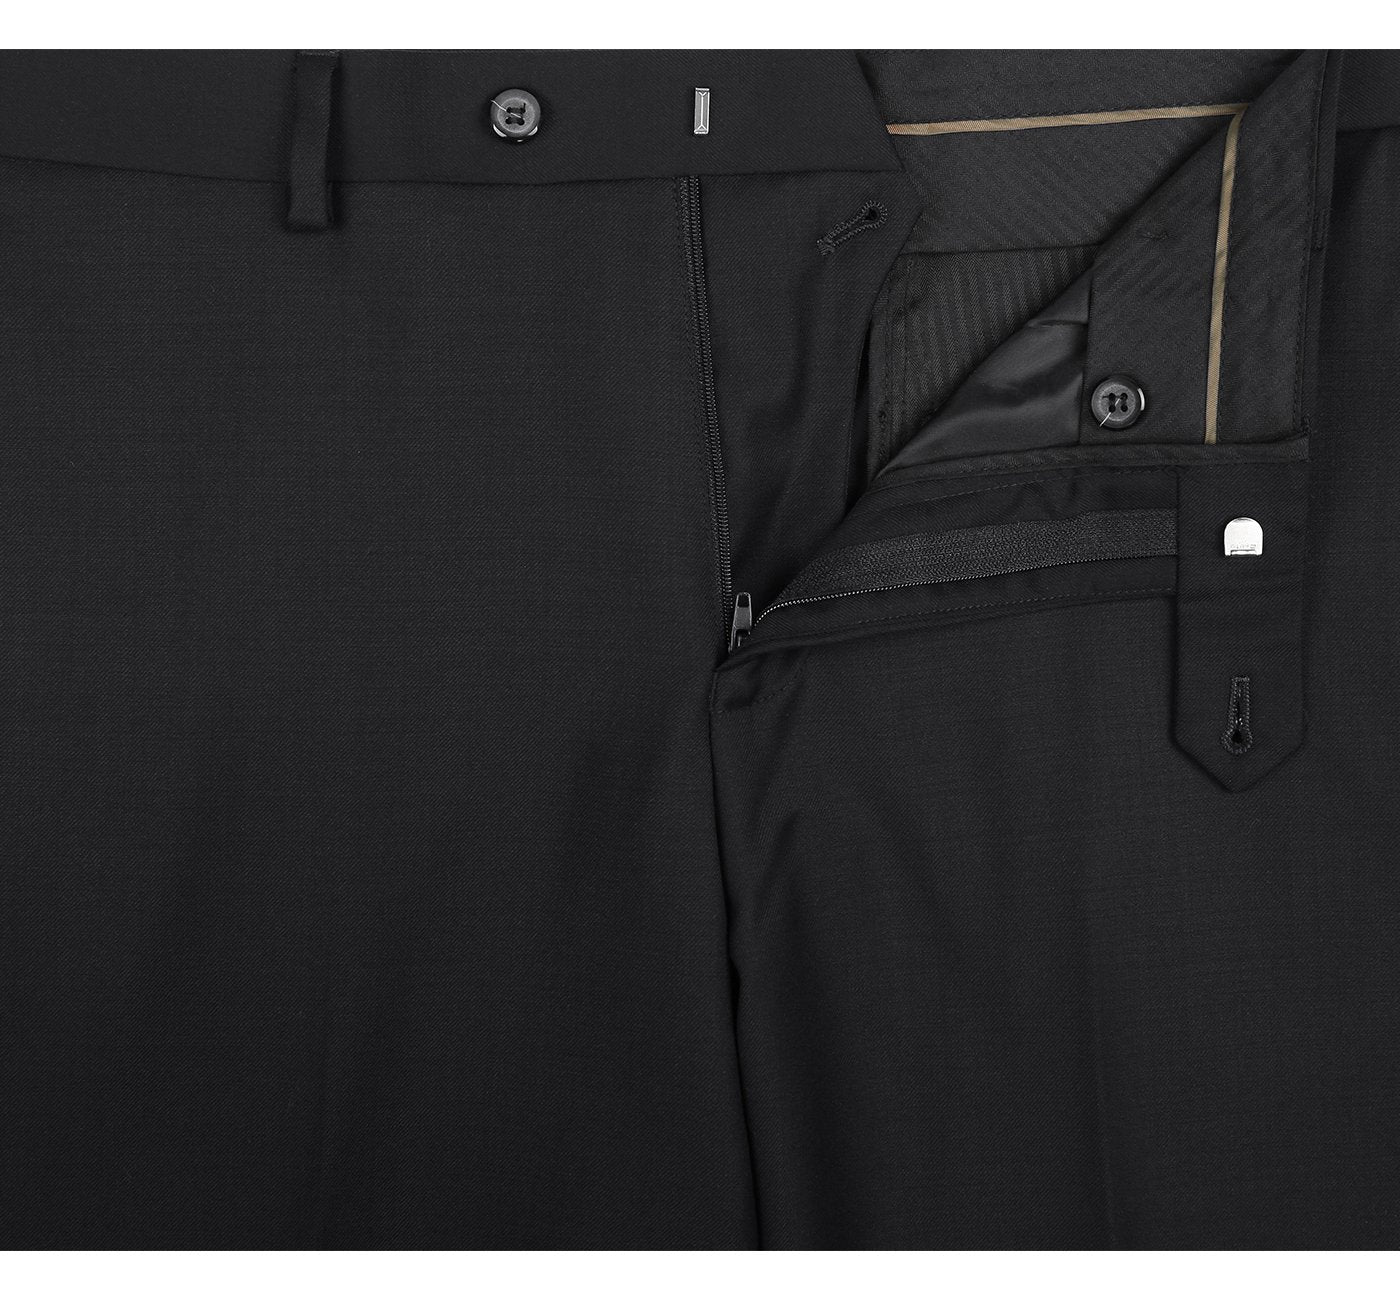 508-1 Men's Regular Fit Flat Front Wool Suit Pant